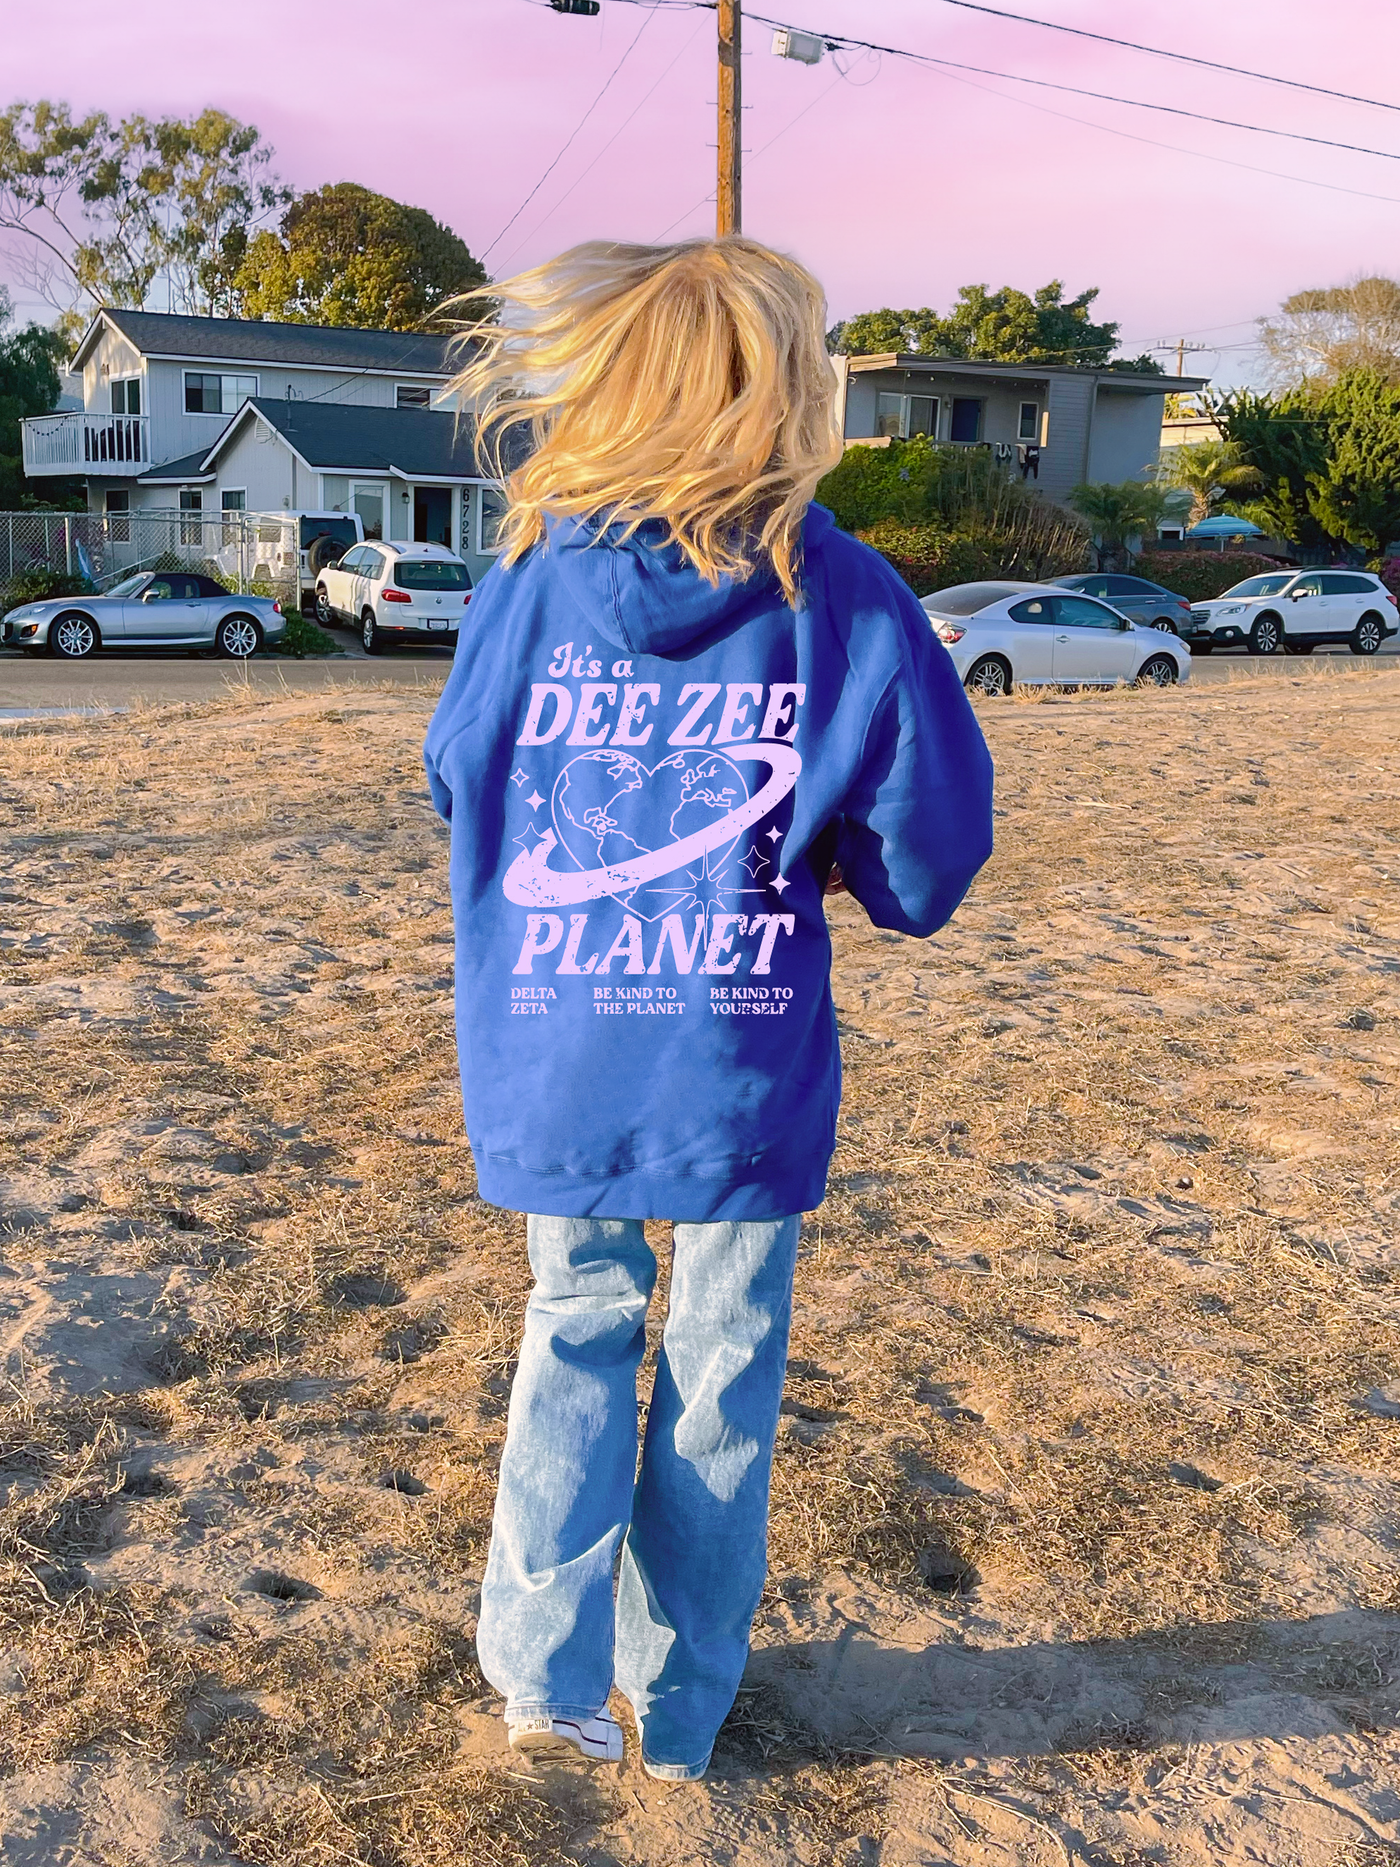 Delta Zeta Planet Hoodie | Be Kind to the Planet Trendy Sorority Hoodie